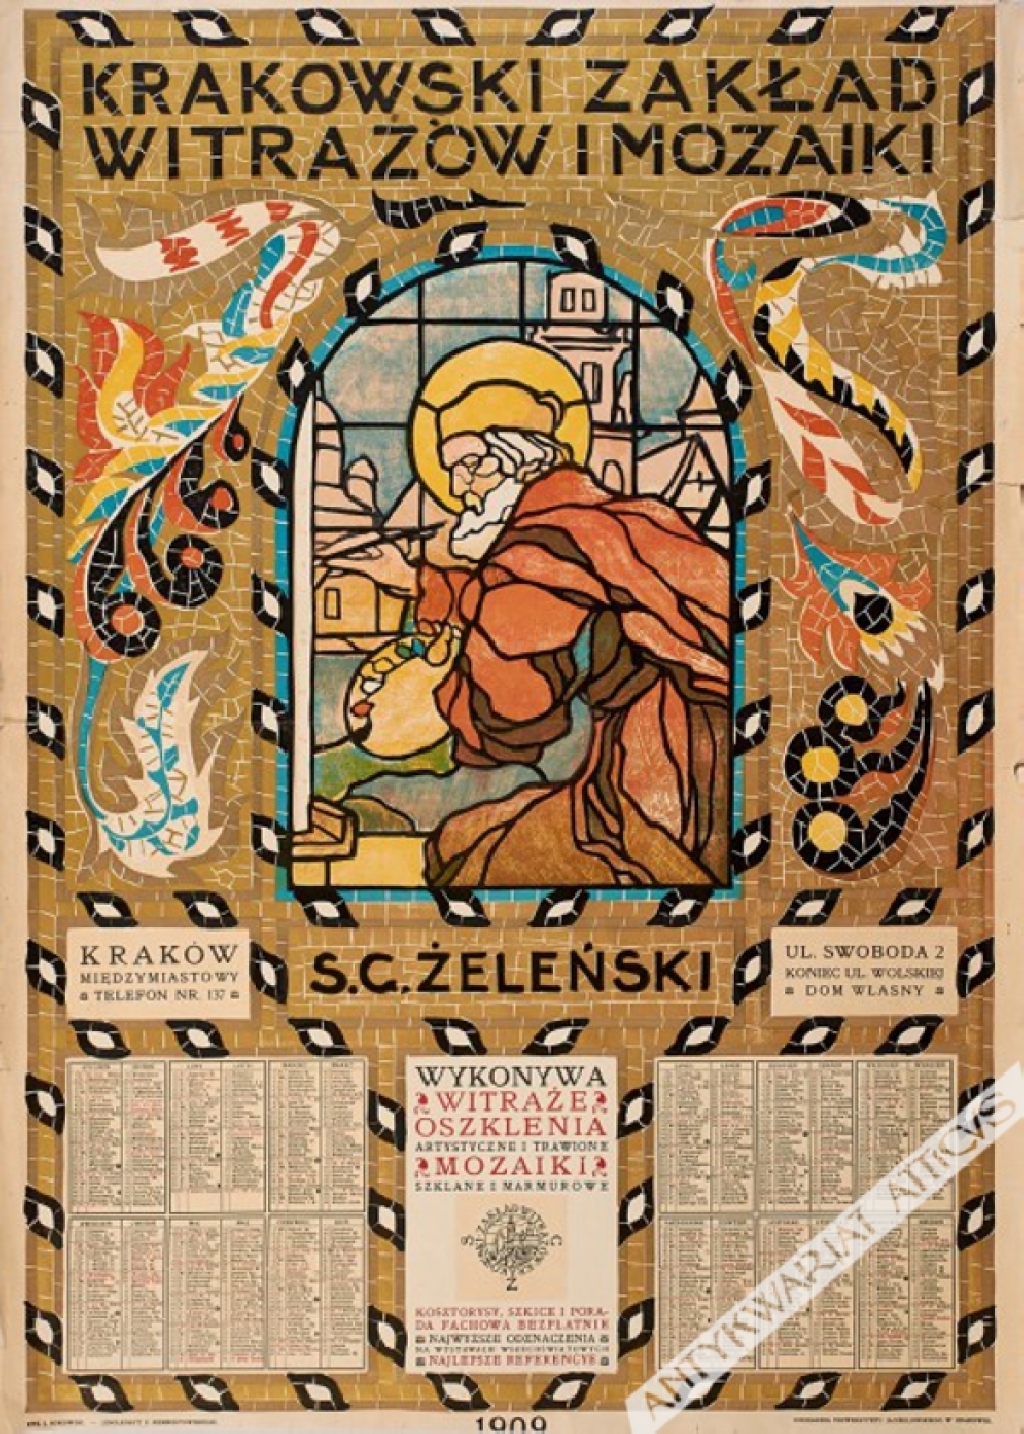 [plakat, 1909] Krakowski zakład witraży S. G. Żeleński.